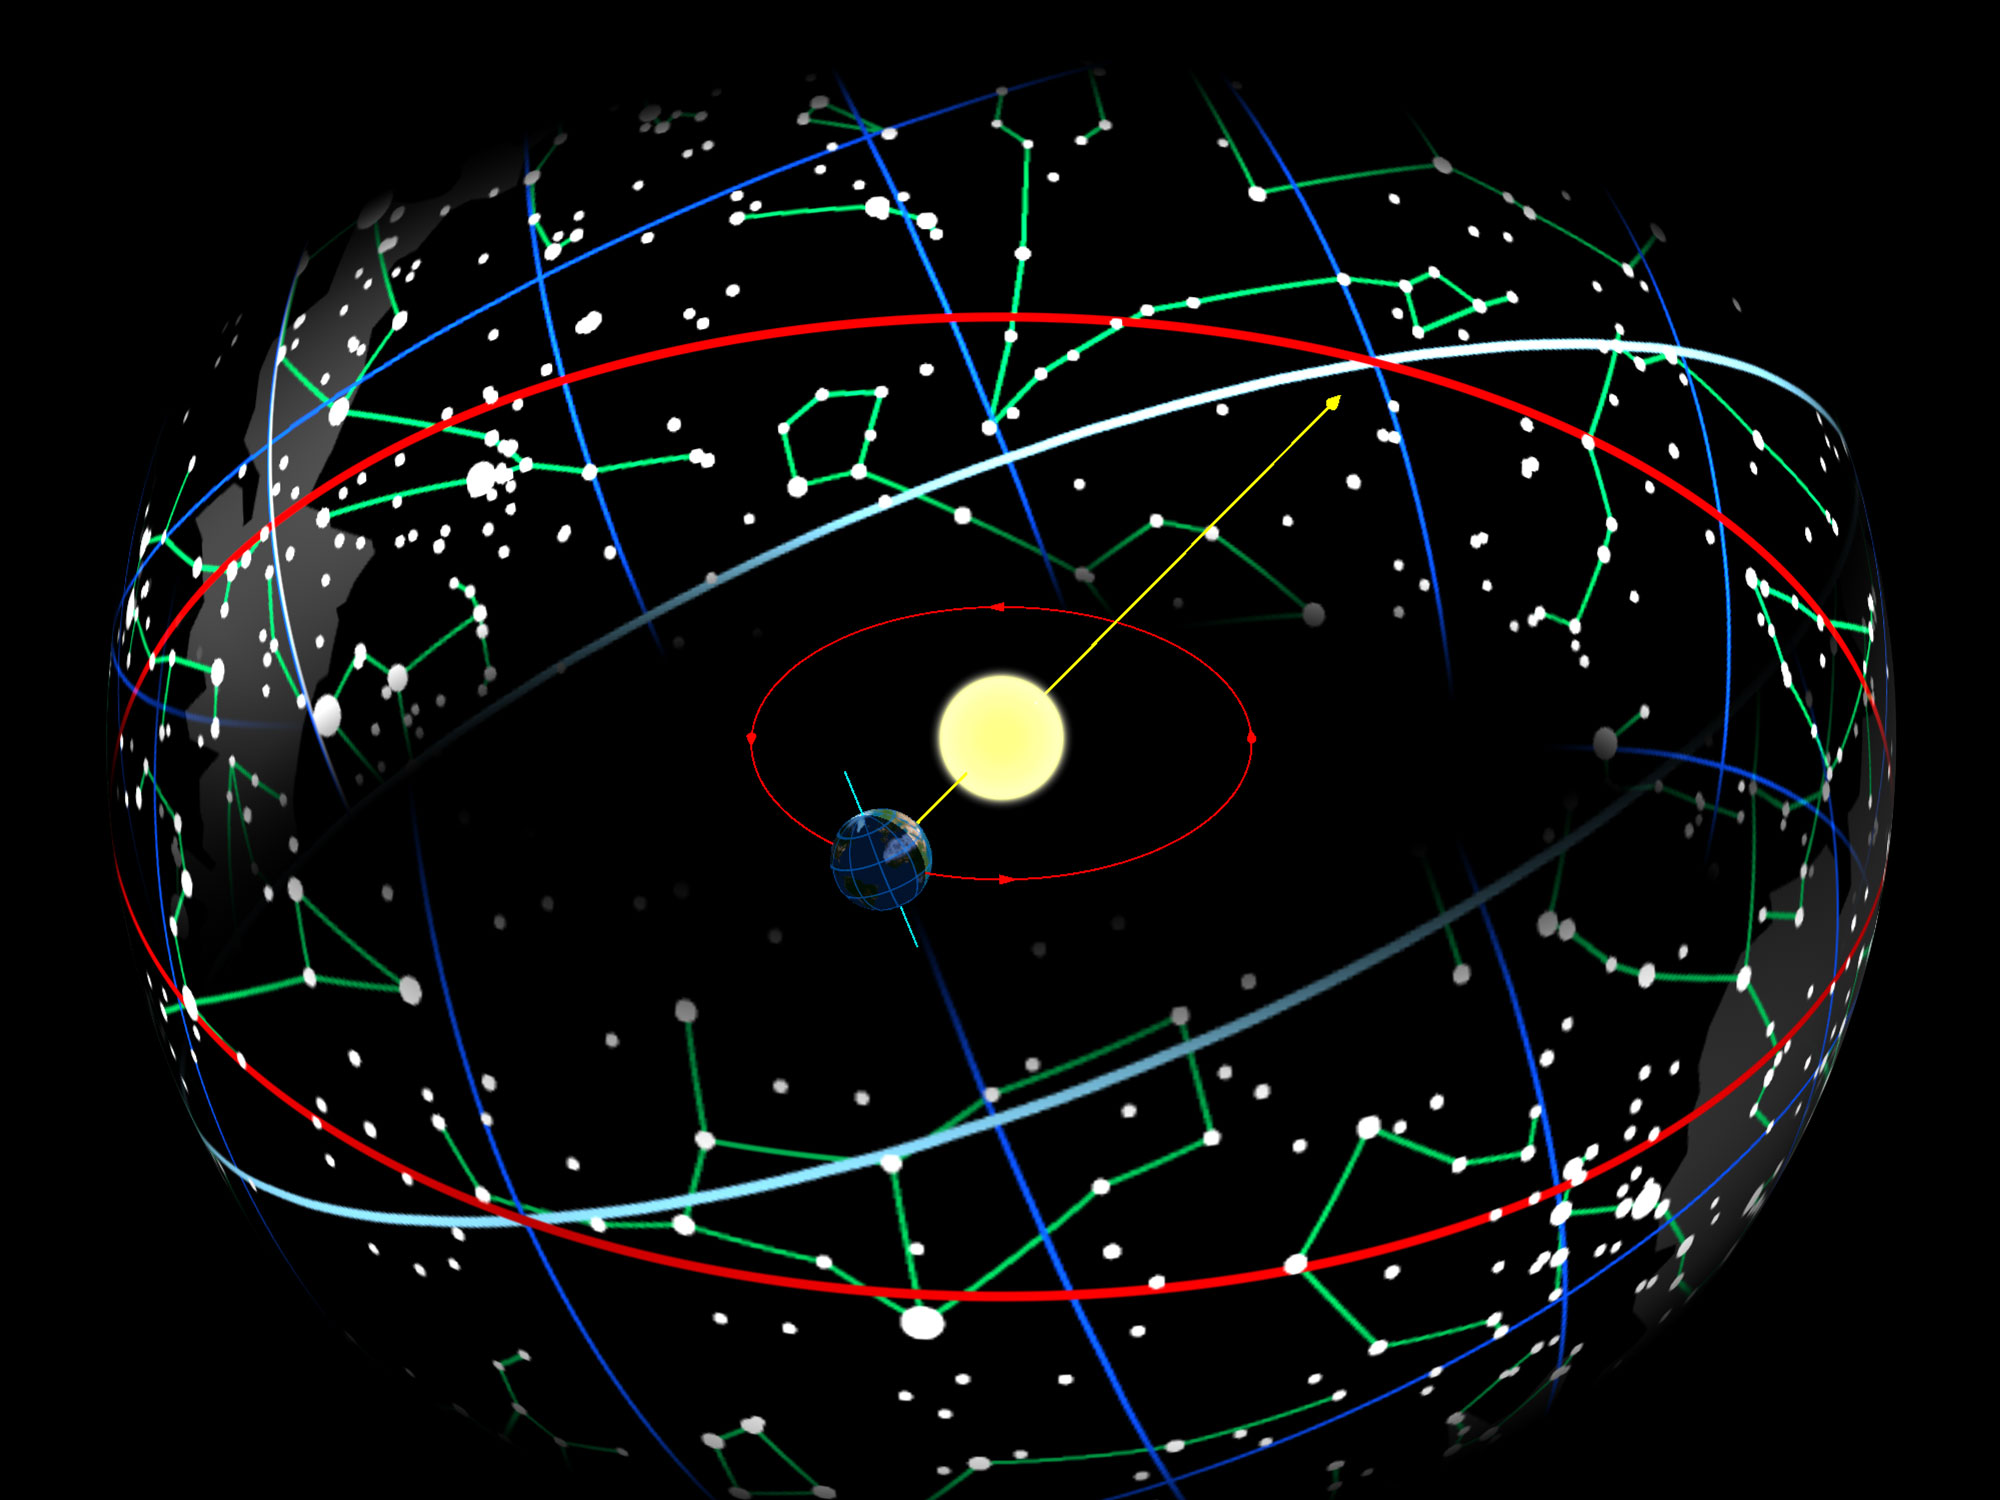 Trái đất trong quỹ đạo của nó xung quanh mặt trời làm cho Mặt trời xuất hiện trên bầu trời khi di chuyển dọc theo mặt trăng tròn (hình tròn màu đỏ), nghiêng 23.44 ° so với đường xích đạo trên bầu trời (xanh trắng).